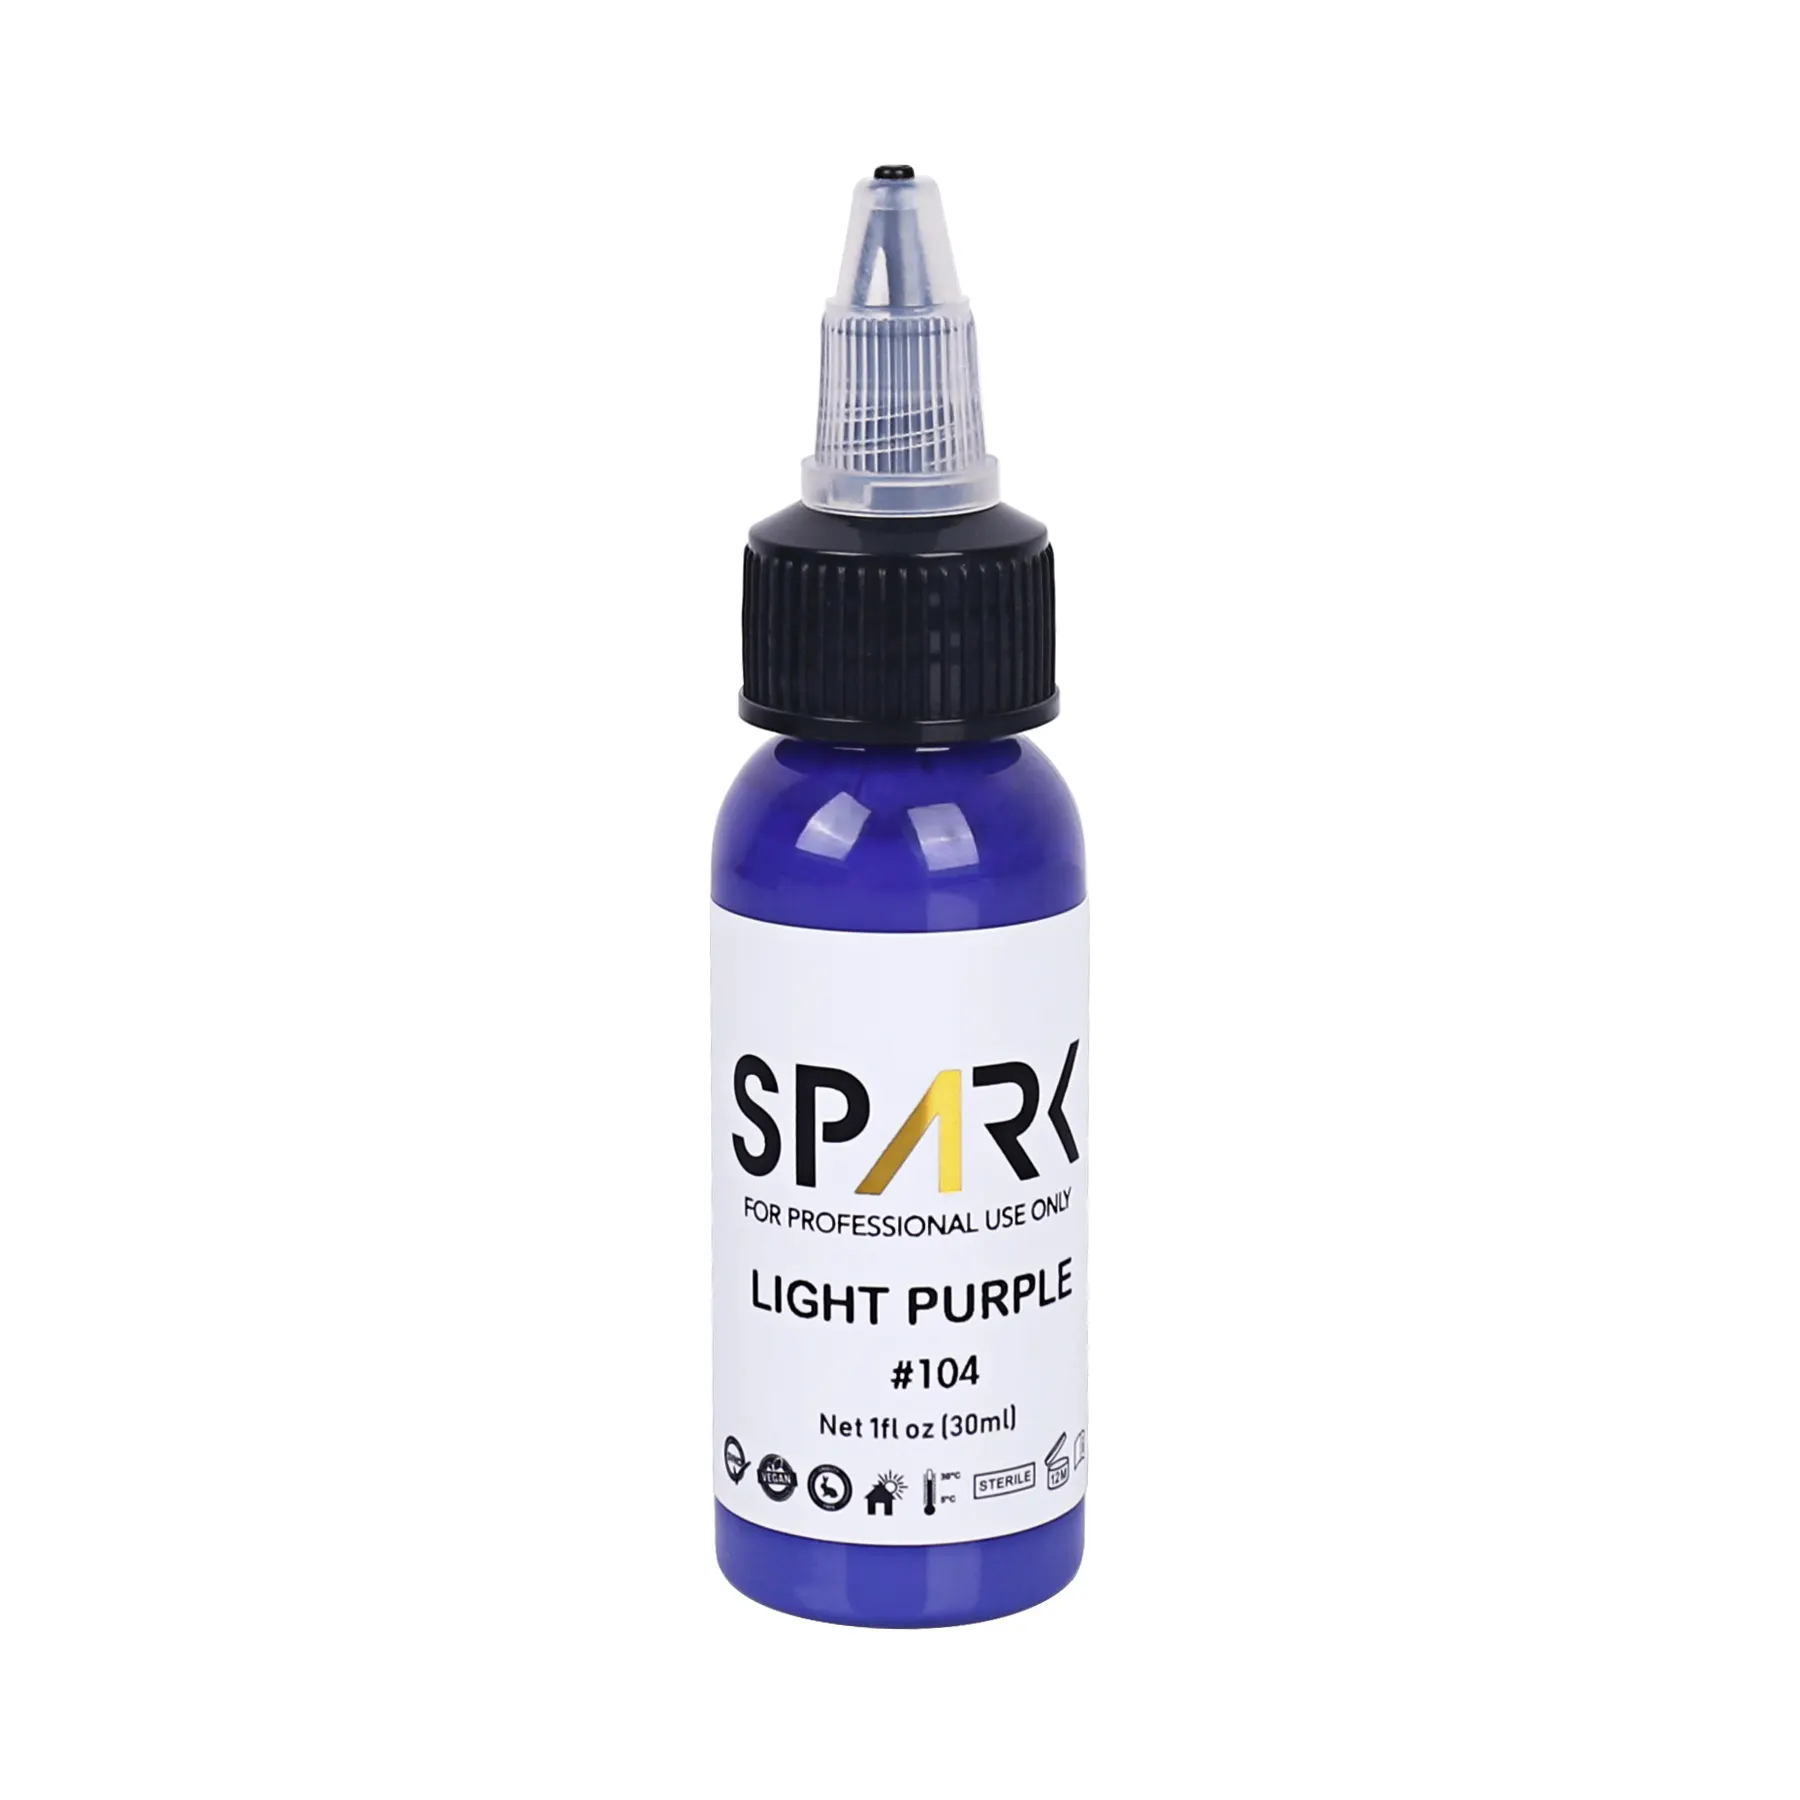 Spark Nhà cung cấp Tùy chỉnh cao cấp 30ml mỹ phẩm hữu cơ tự nhiên tốt nhất không độc hại sắc tố Tattoo Stencil mực